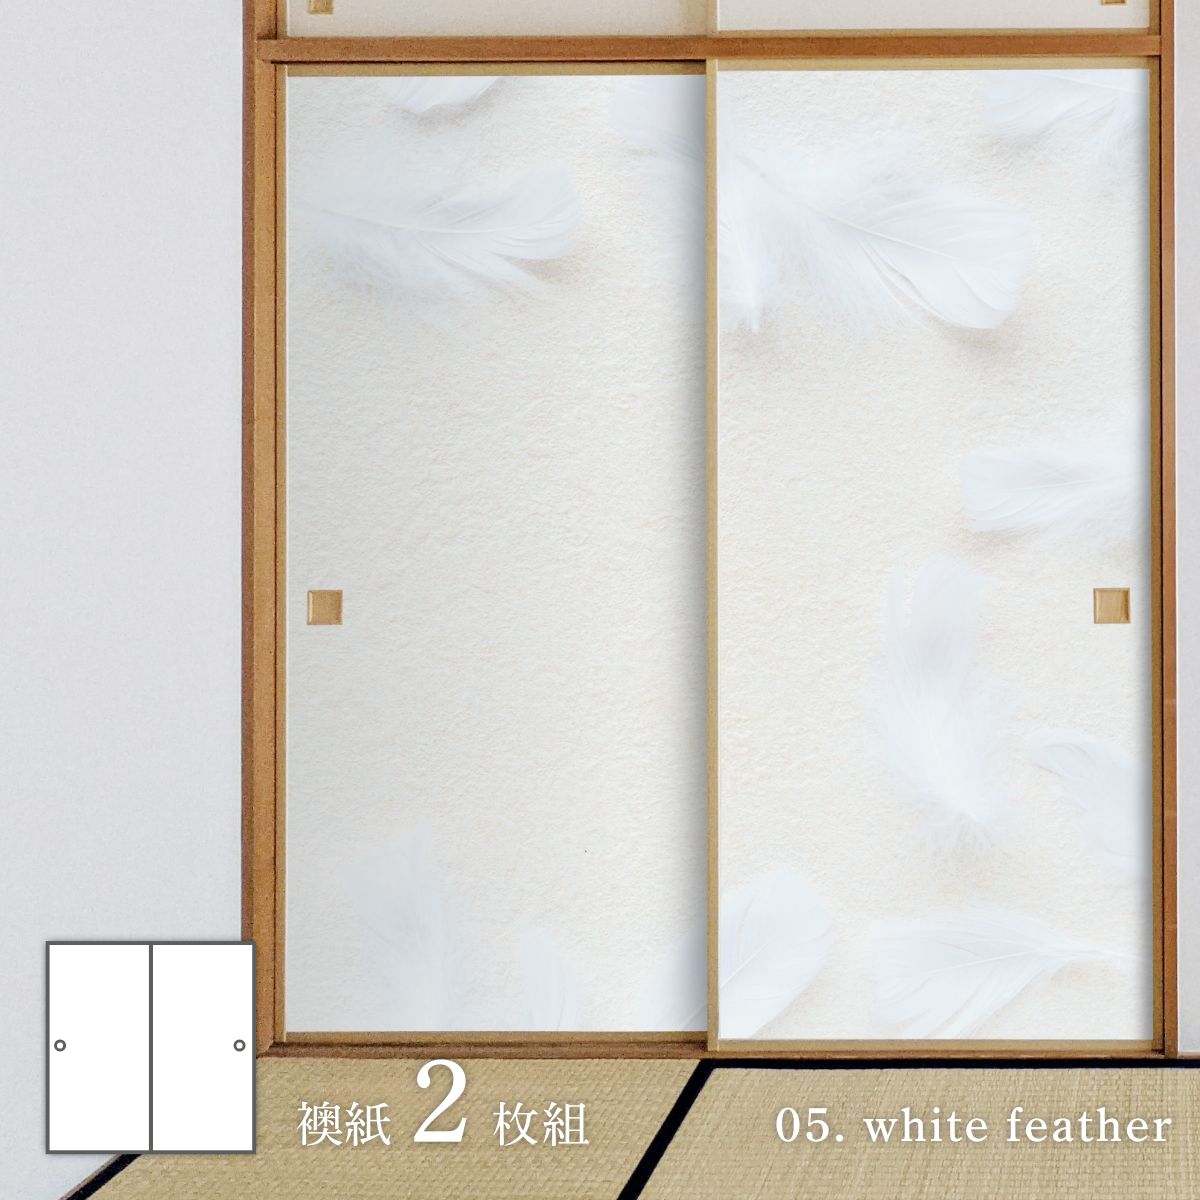 ホワイトアルバム white feather 襖紙 92cm×182cm 2枚入り 水貼りタイプ アサヒペン シンプル デザイン WAM-05F